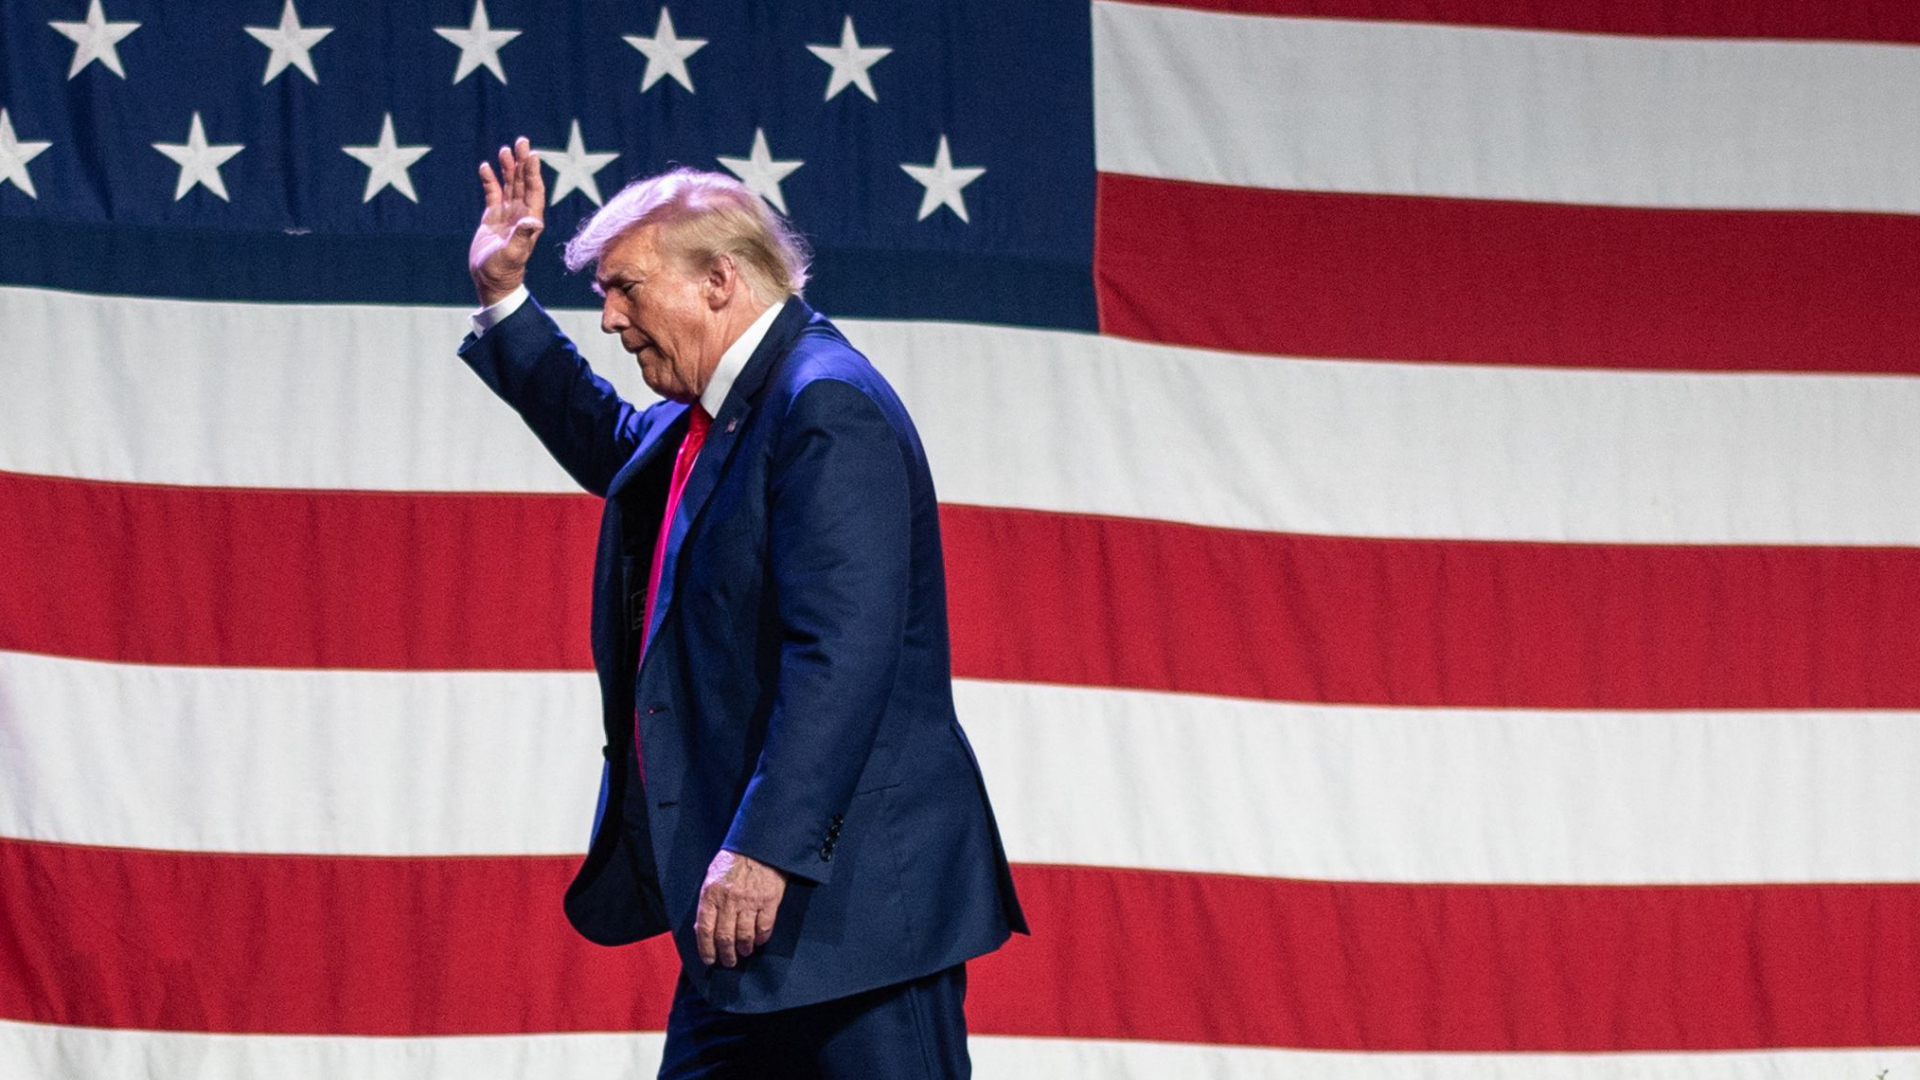 Trump verlässt winkend eine Bühne, auf der eine US-Flagge hängt